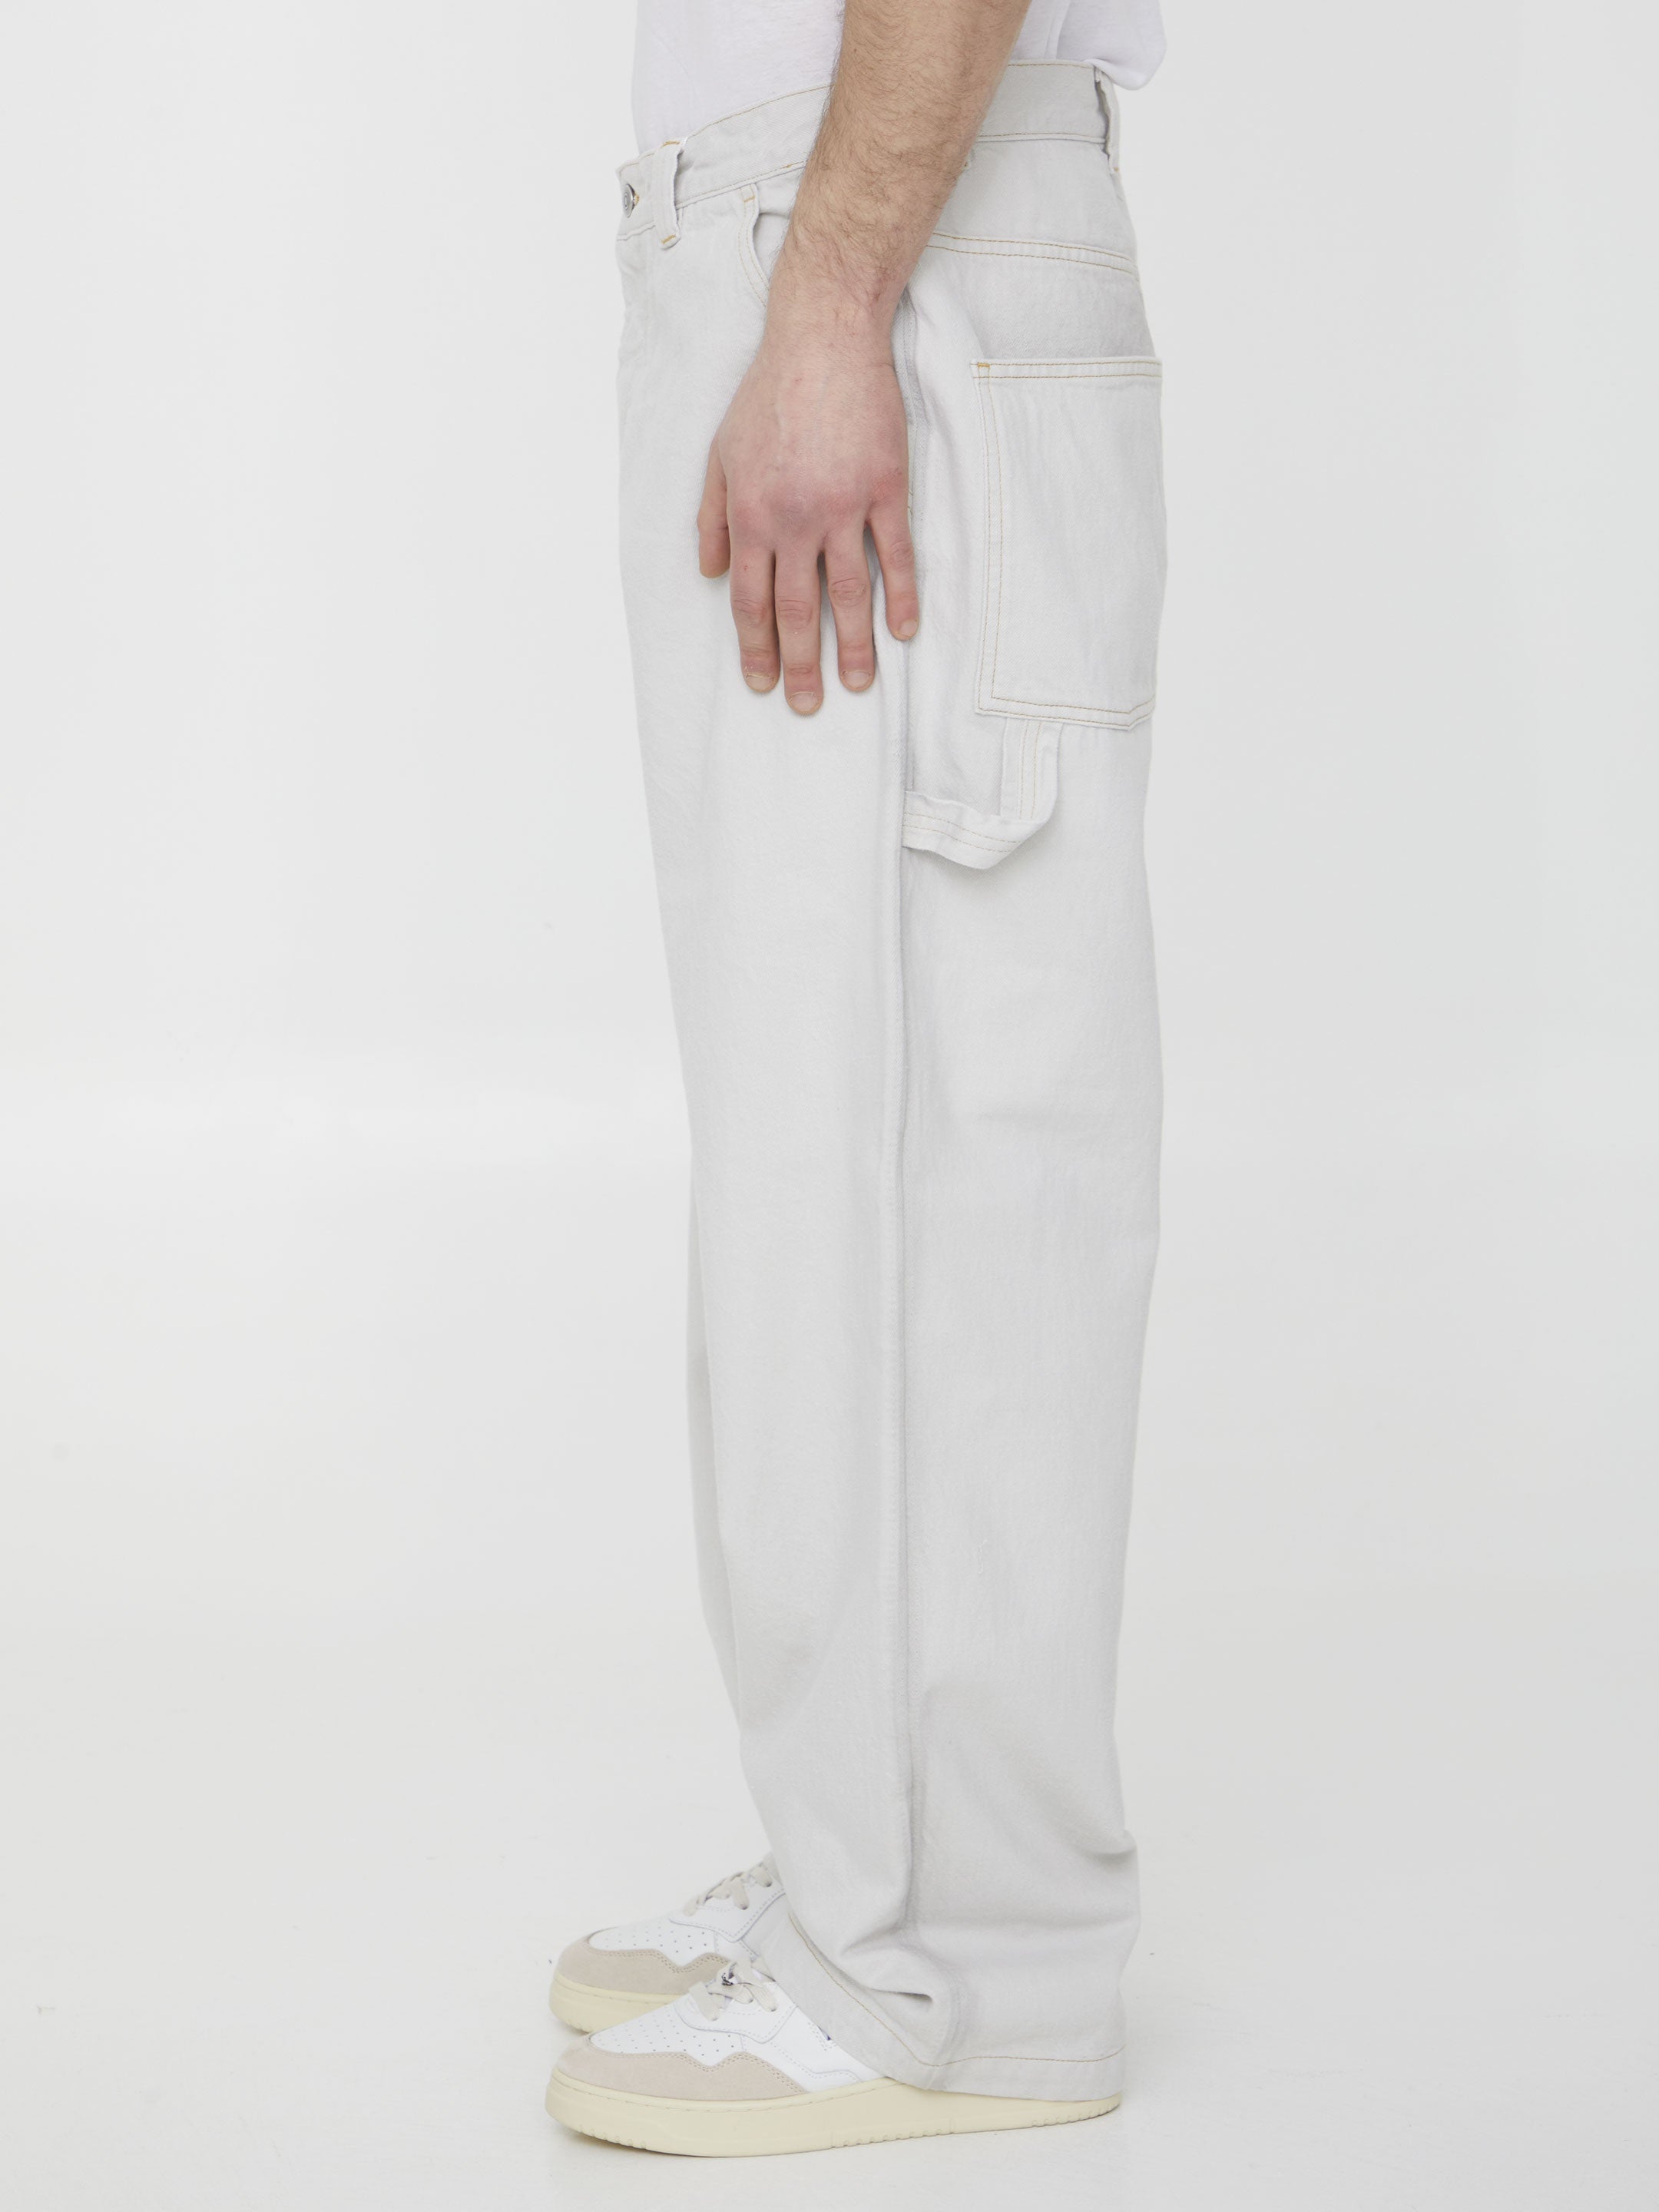 MAISON-MARGIELA-OUTLET-SALE-Cotton-denim-trousers-Hosen-ARCHIVE-COLLECTION-3.jpg